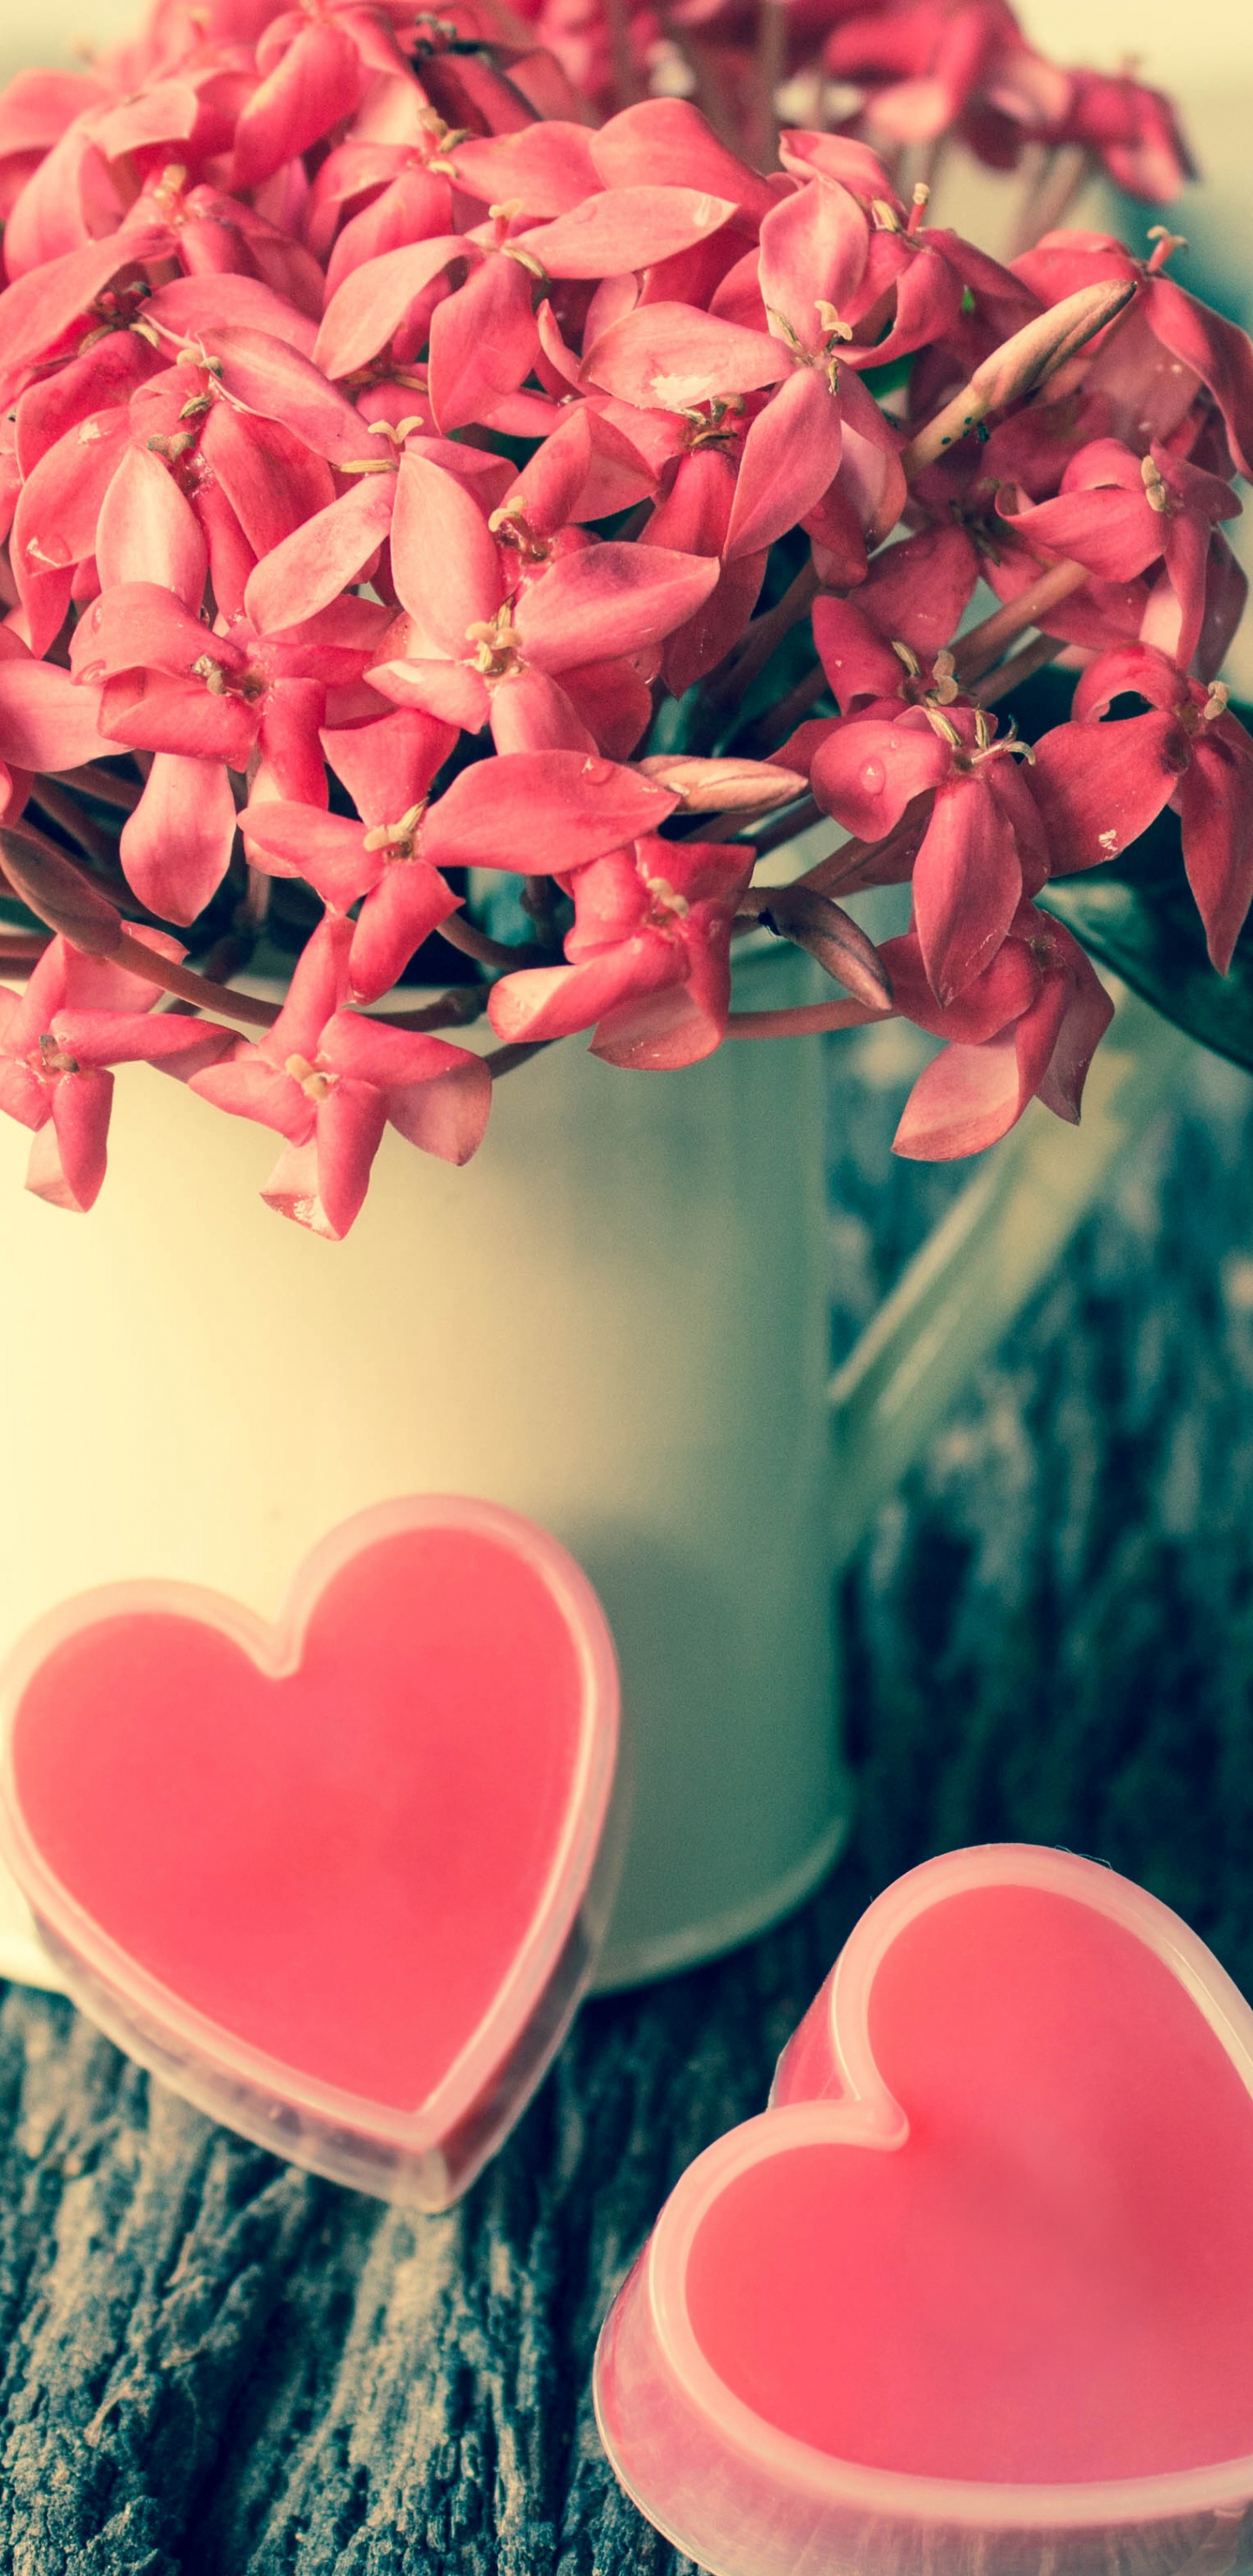 粉红色, 爱情, 心脏, 菌群, 弹簧 壁纸 1440x2960 允许